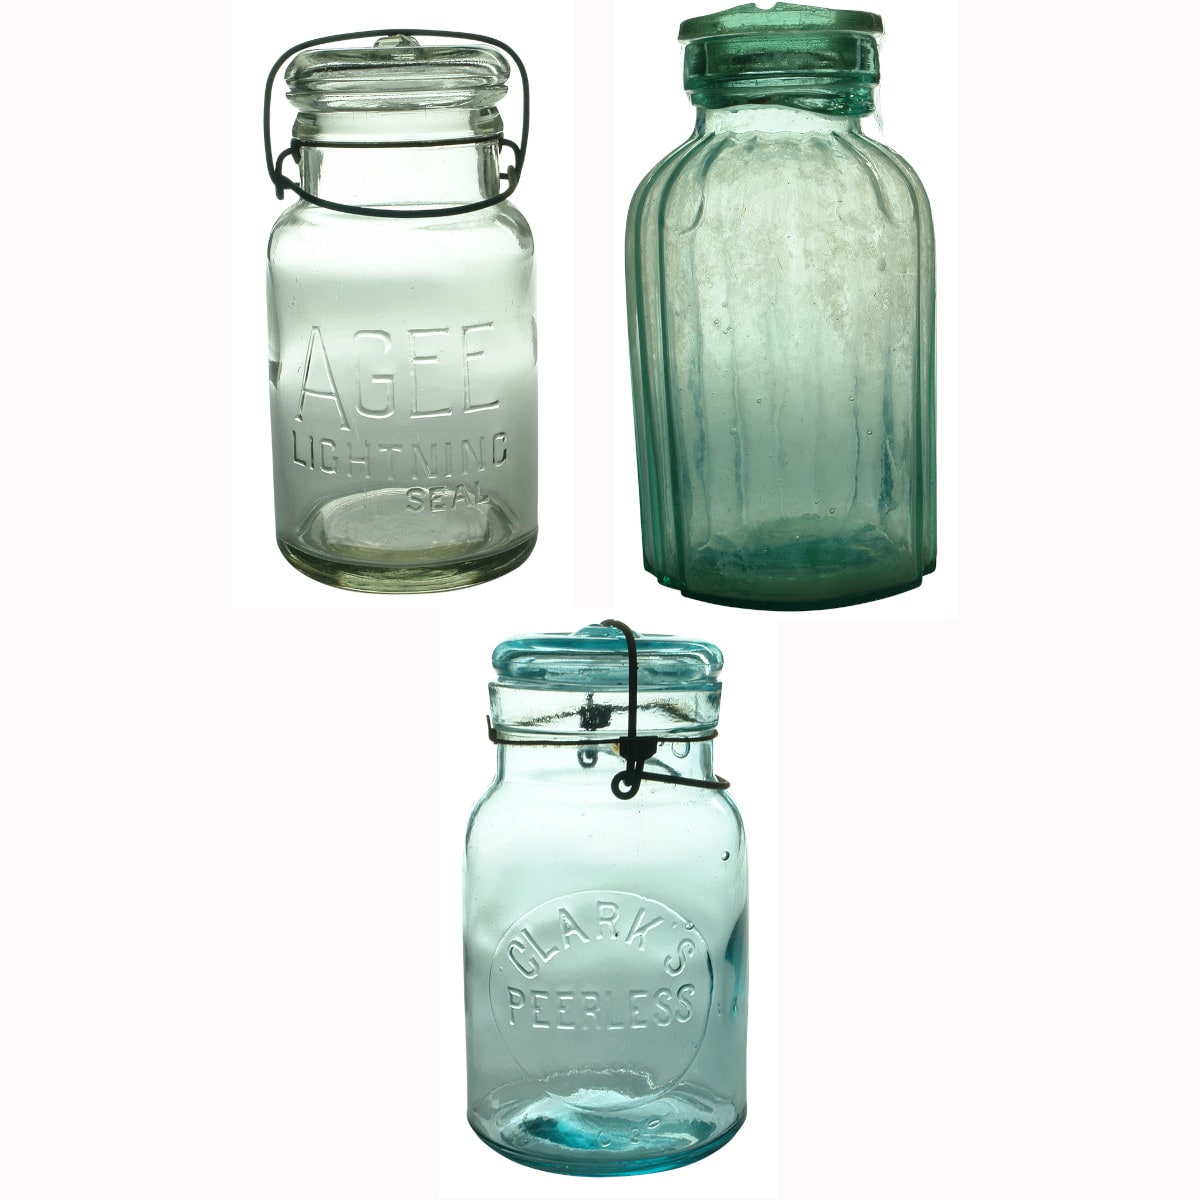 Three Jars: Agee Lightning; Clark's Peerless; Plain Salt.